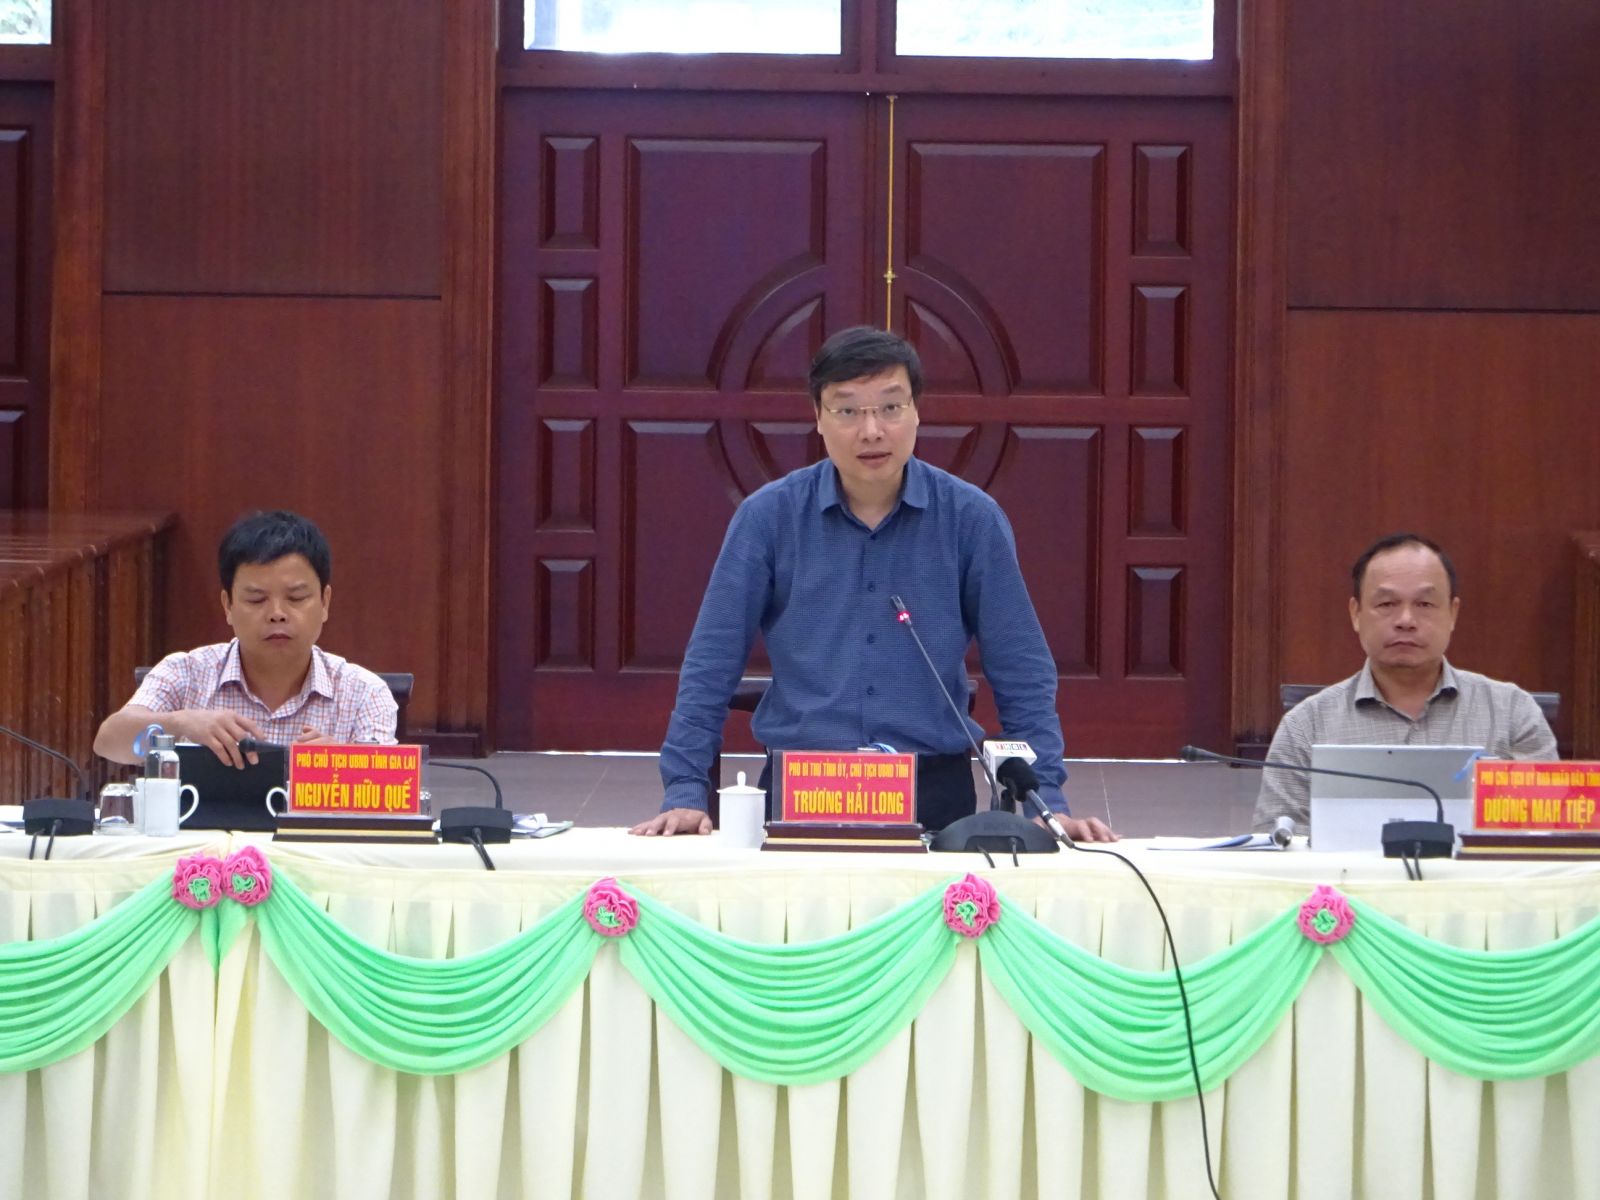 Chủ tịch UBND tỉnh Gia Lai kết luận hội nghị và đưa ra các yêu cầu về cải thiện các bộ chỉ số 